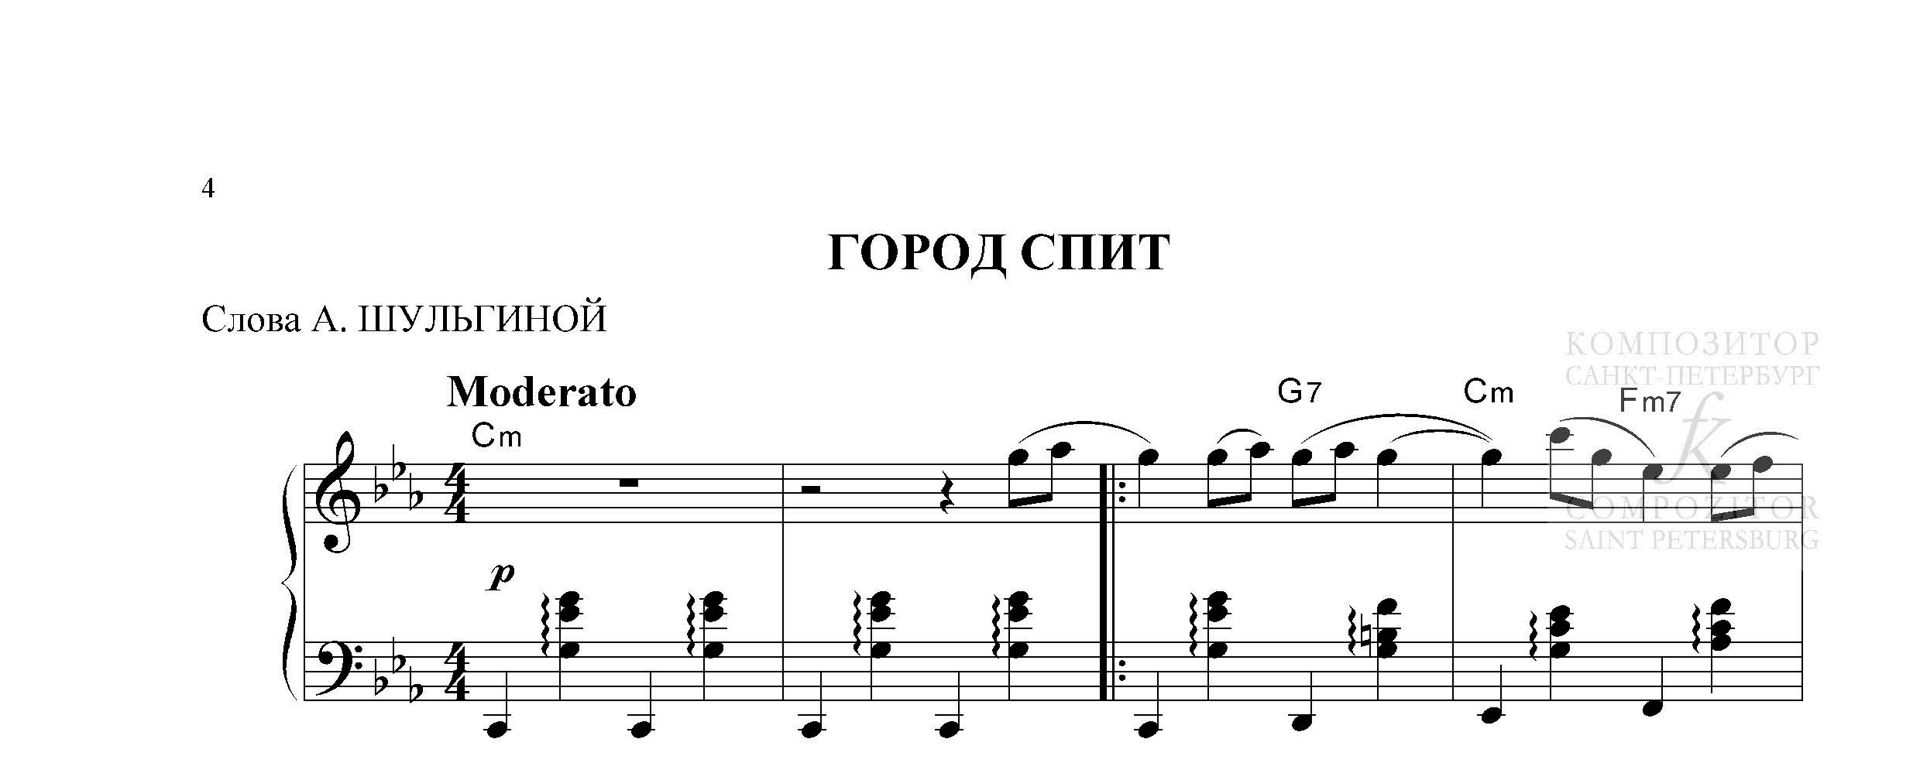 ГОРОД СПИТ. Валерий Гаврилин. Легкое переложение для фортепиано (гитары).